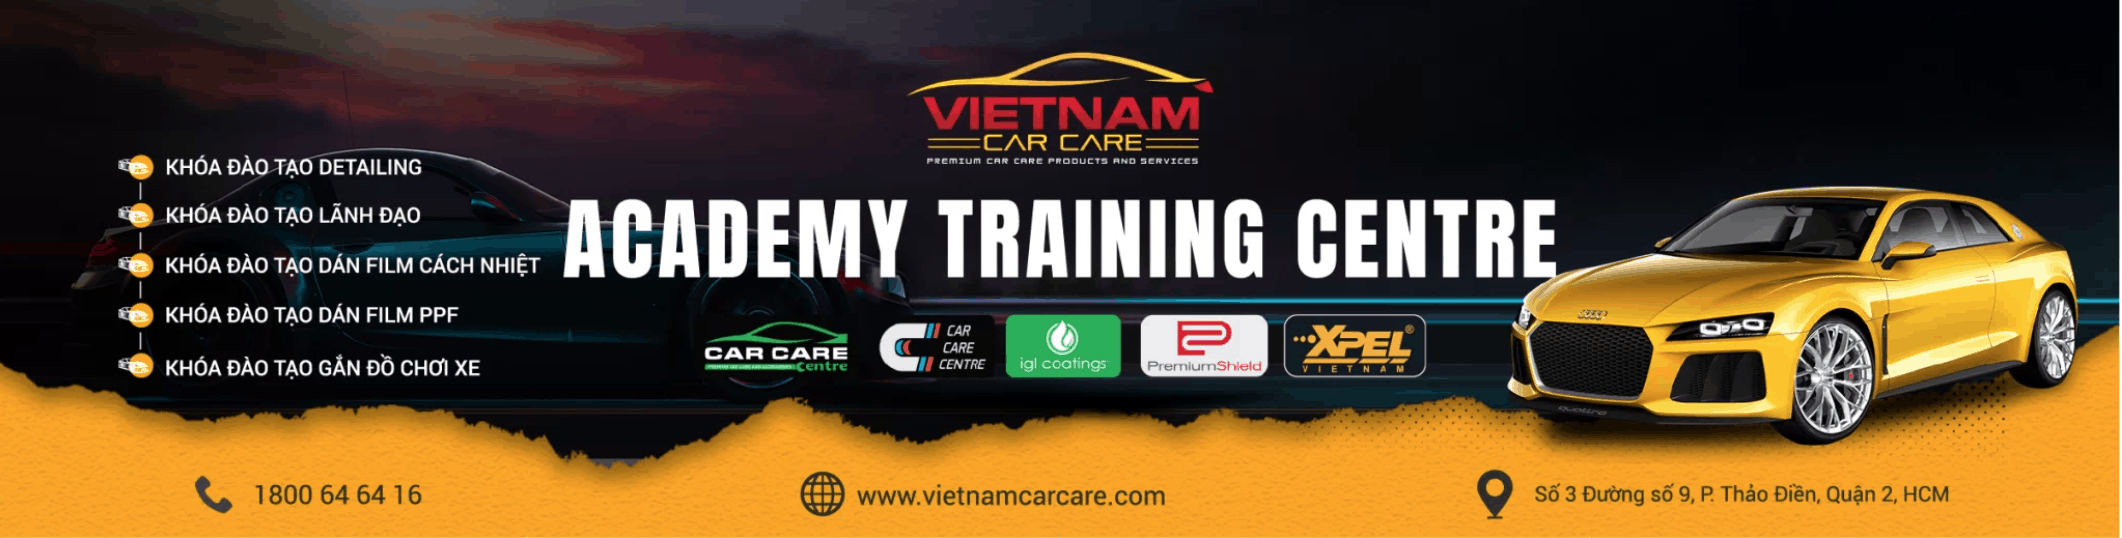 Vietnam Car Care Academy